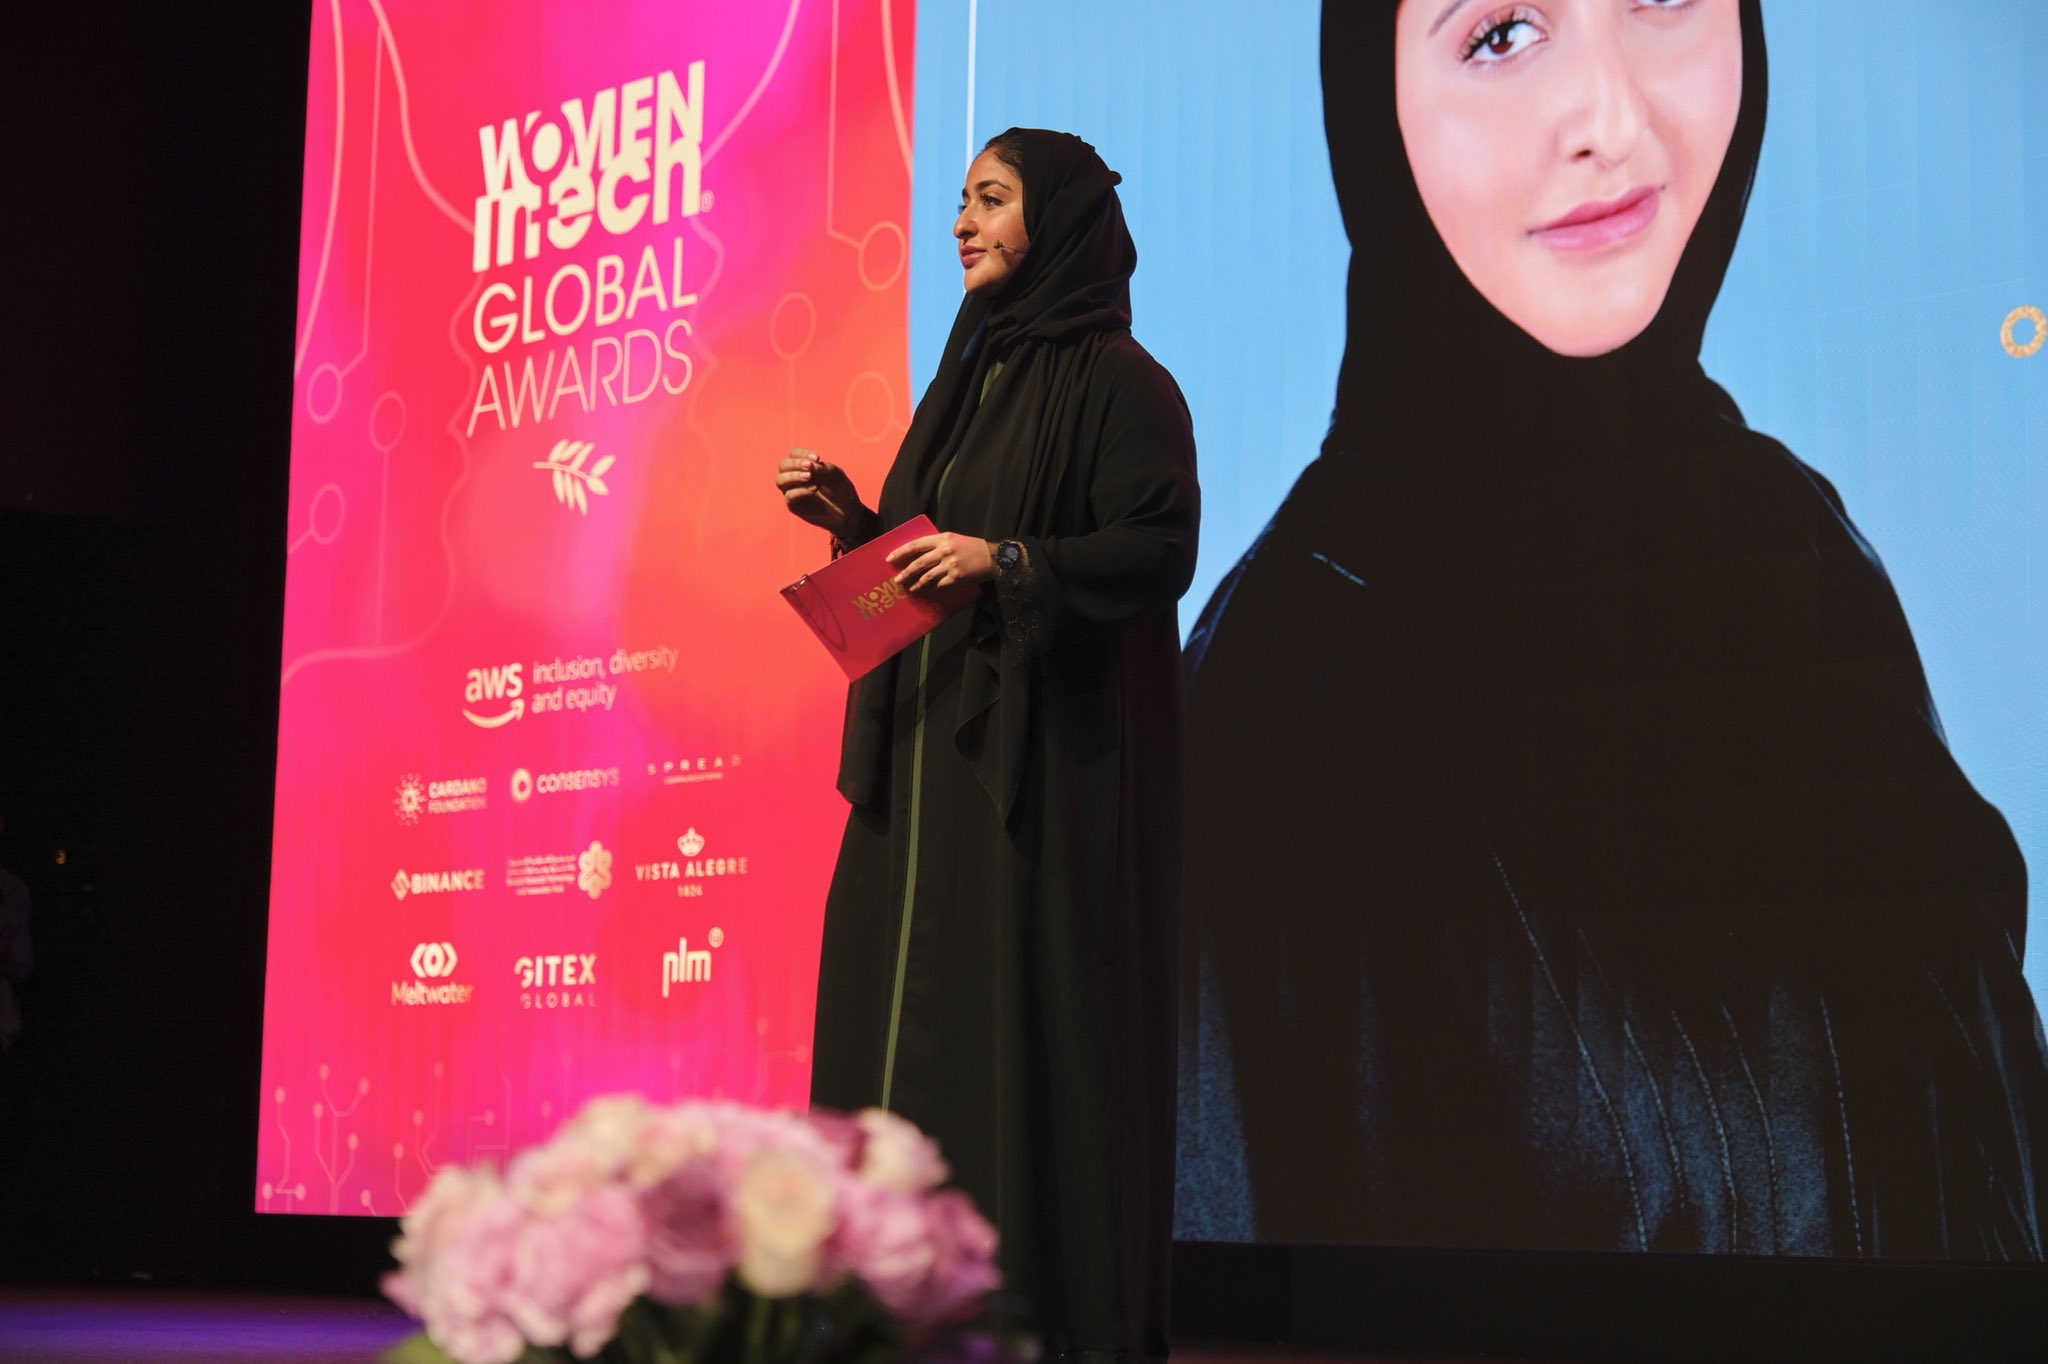 Dubai menjadi tuan rumah Women in Tech Global Awards di Museum of the Future